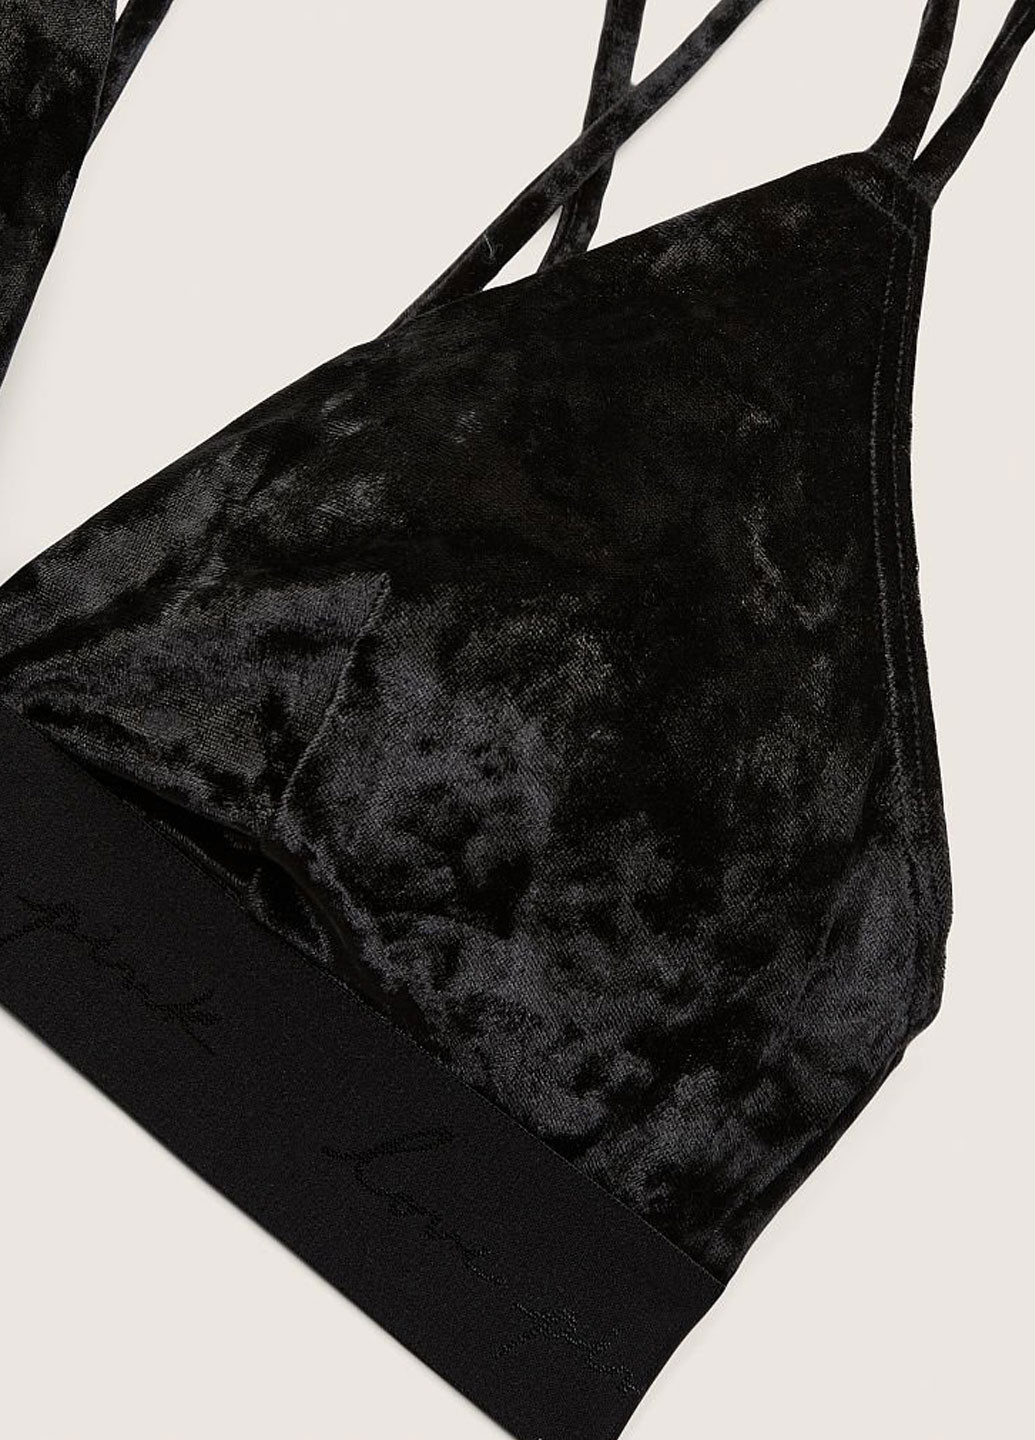 Чёрный триэнджел бюстгальтер Victoria's Secret без косточек полиэстер, велюр